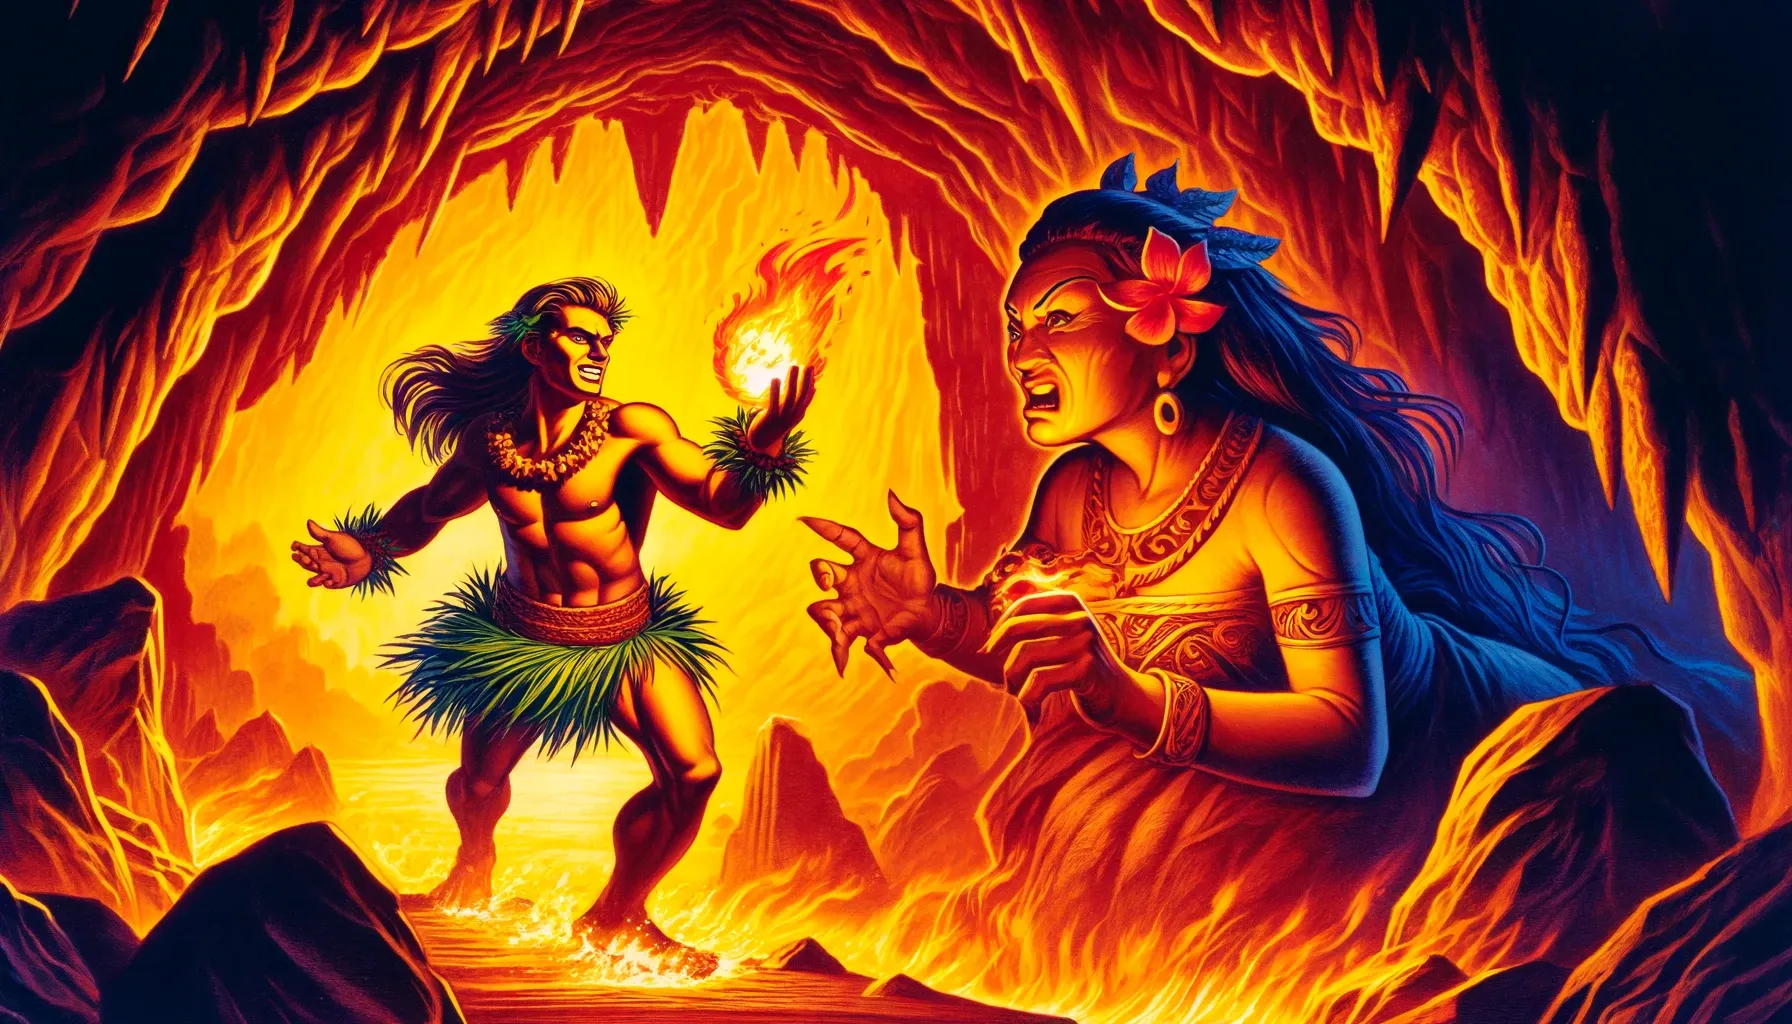 Maui, el semidiós polinesio, sostiene una llama en su mano mientras Mahuika, la diosa del fuego, lo mira furiosa en una cueva ardiente.